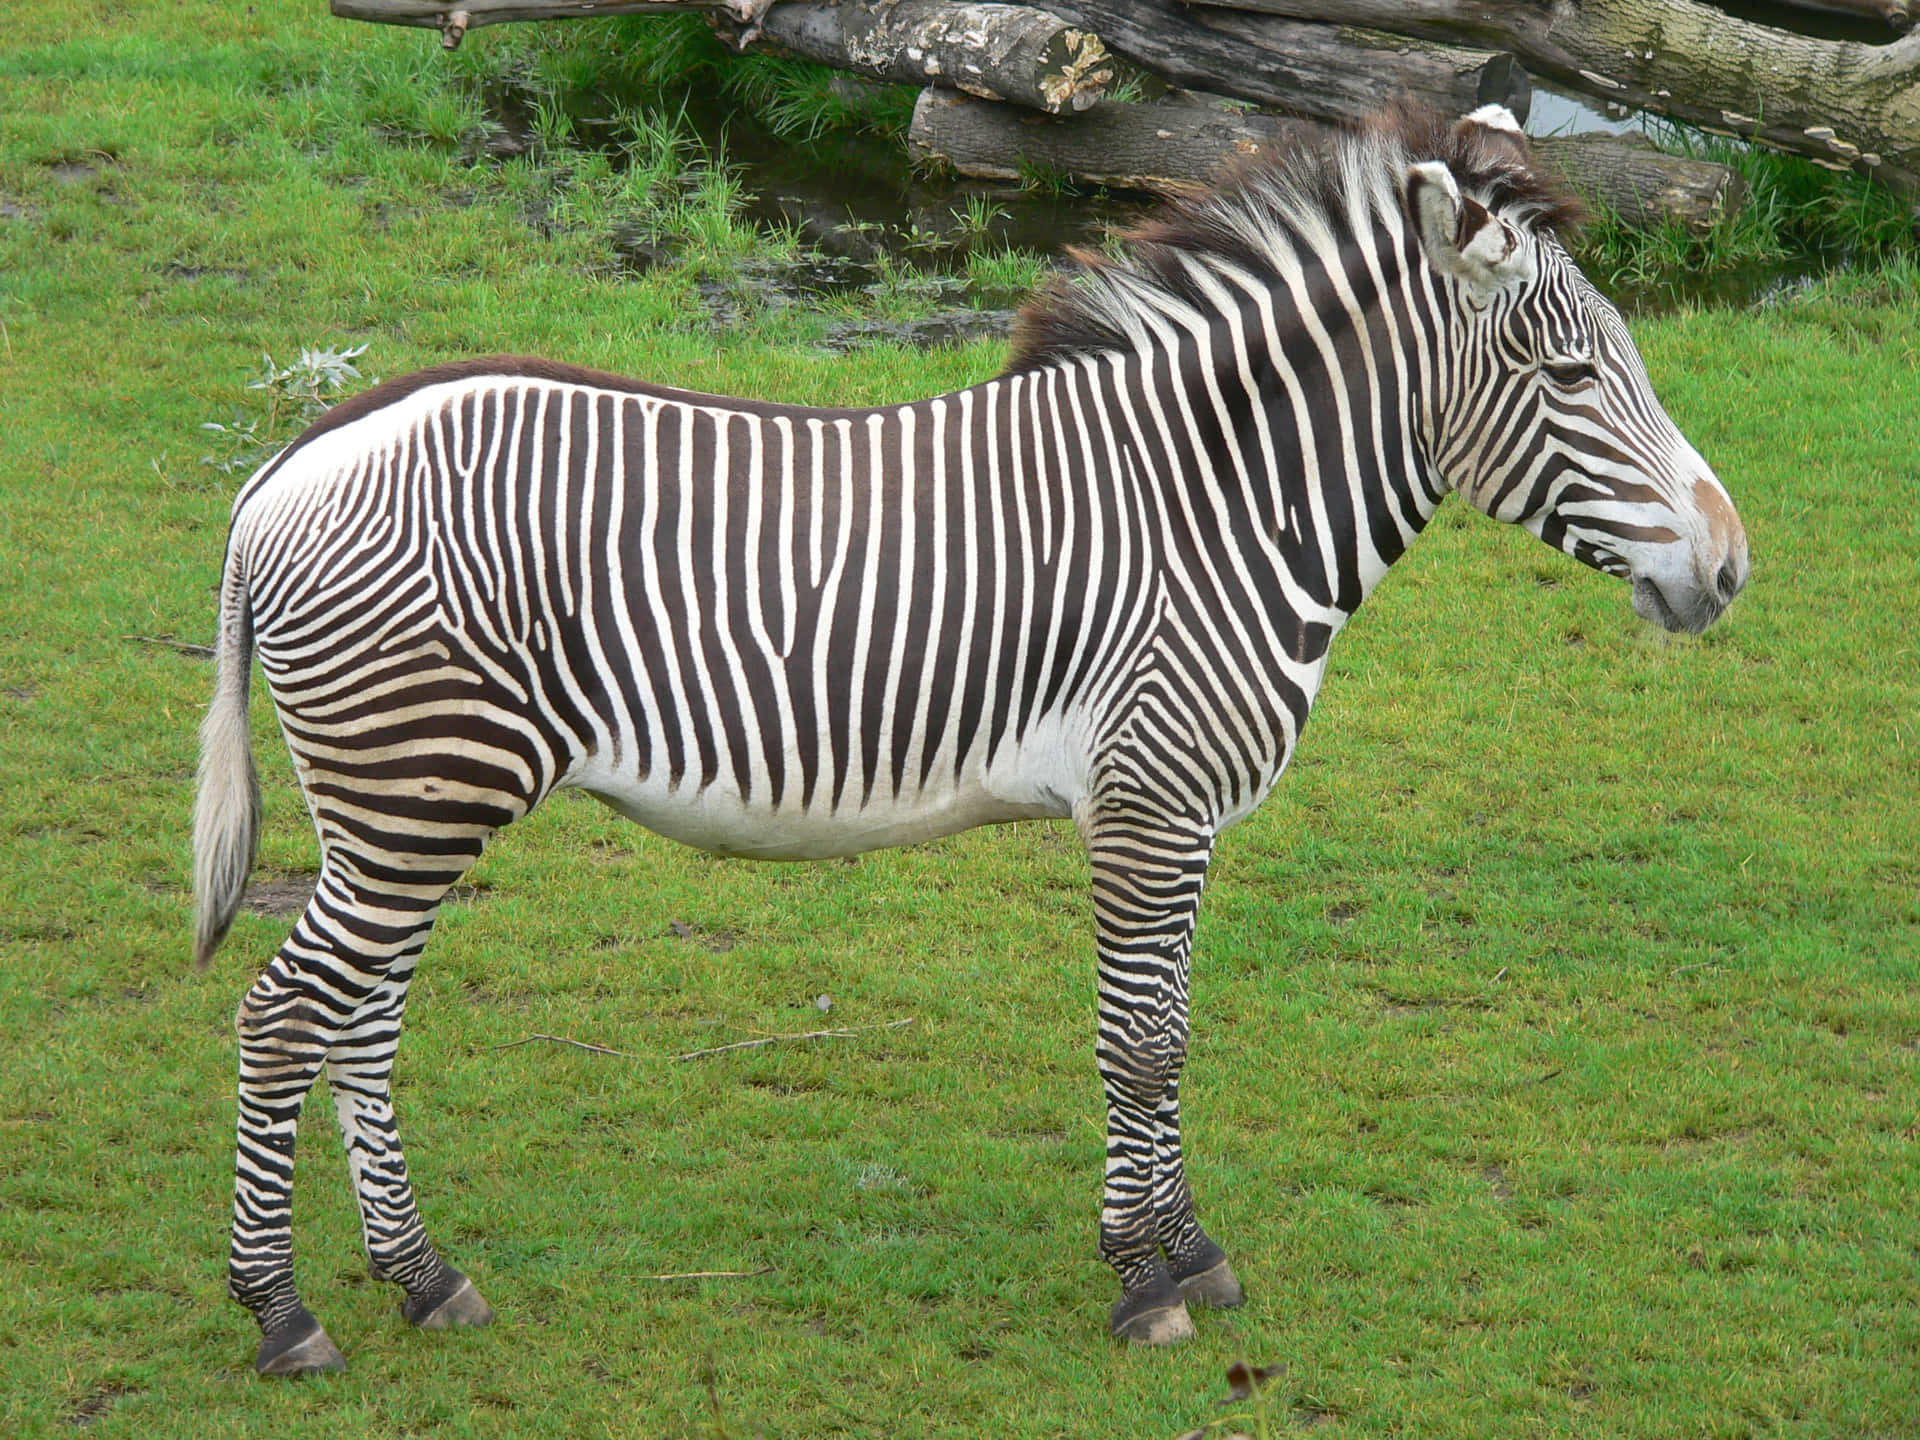 Labellezza Della Savana Africana - Uno Splendido Motivo Di Bianco E Nero Riscontrato Nella Zebra.